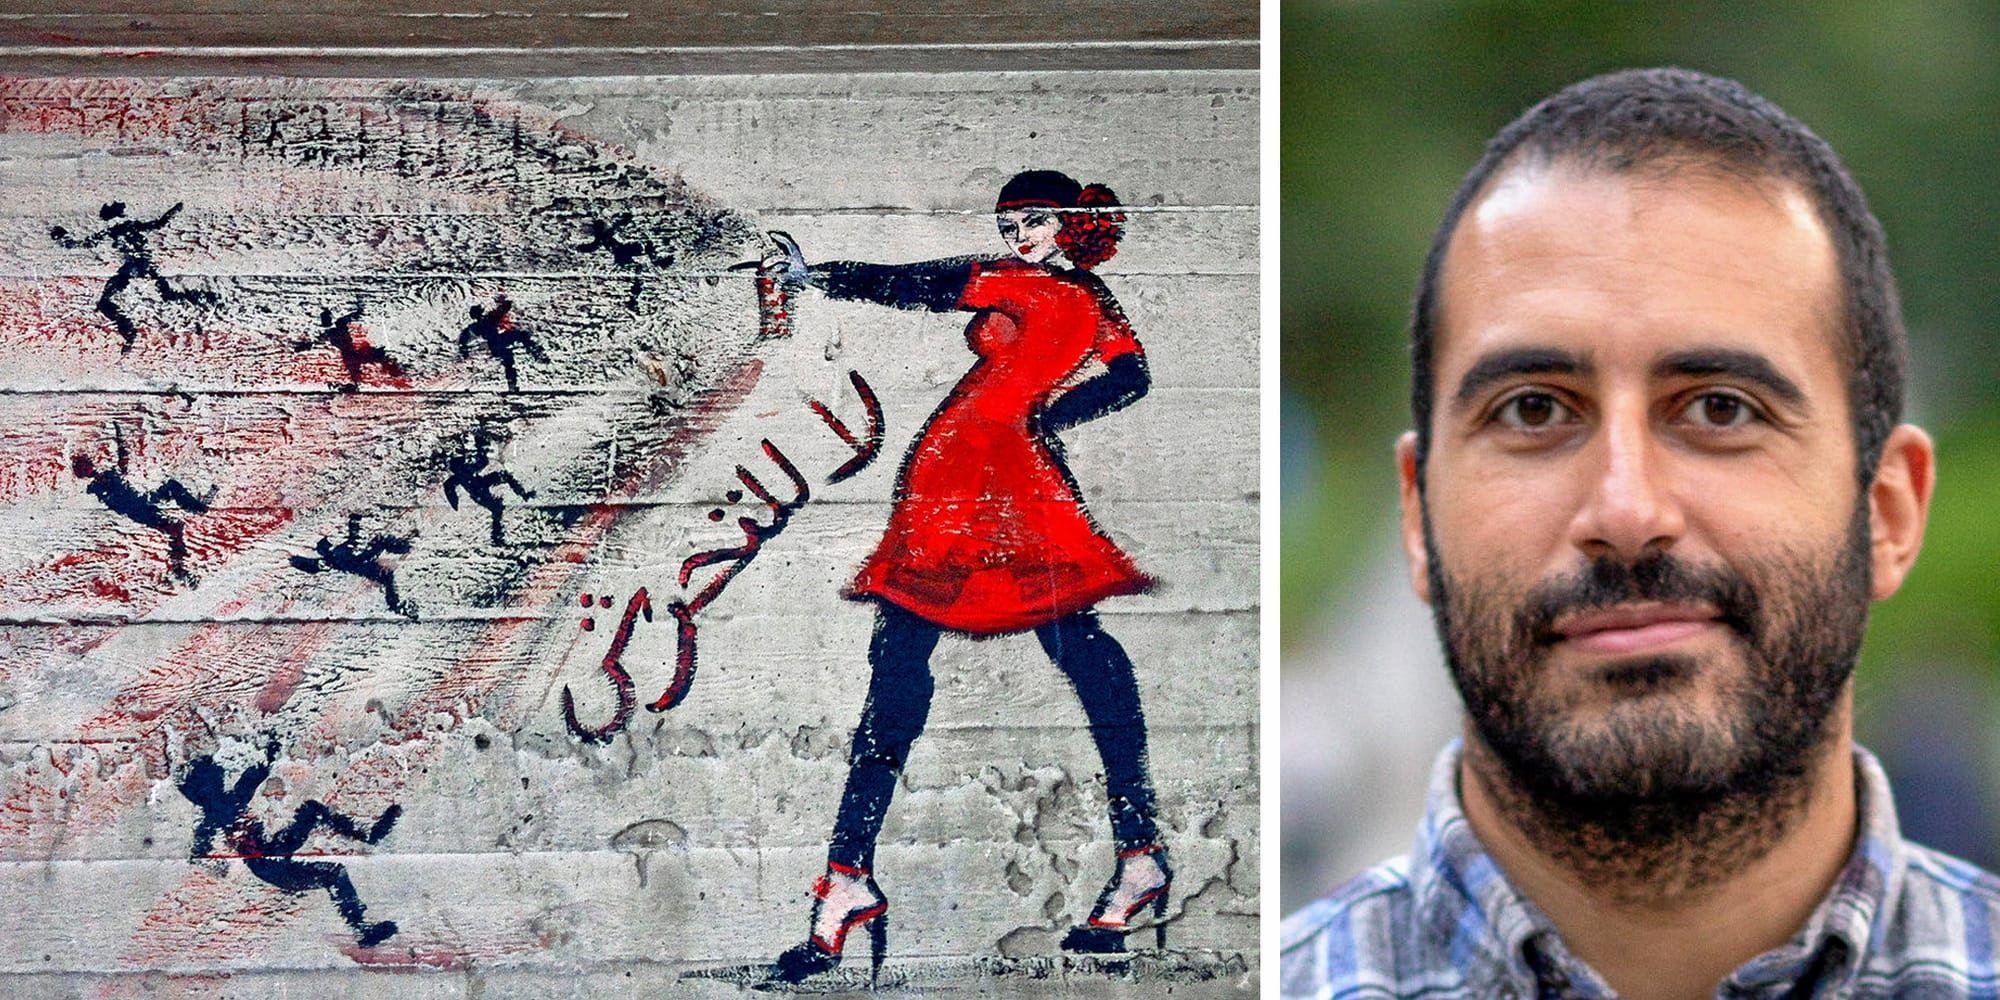 Kvinnokamp. Graffiti i Kairo med texten ”Inga trakasserier”. En FN-undersökning antyder att majoriteten av både kvinnor och män i Egypten ser sexuella trakasserier som något kvinnan i någon mån är ansvarig för genom att bland annat klä sig utmanande, skriver Omar Makram, GAPF.